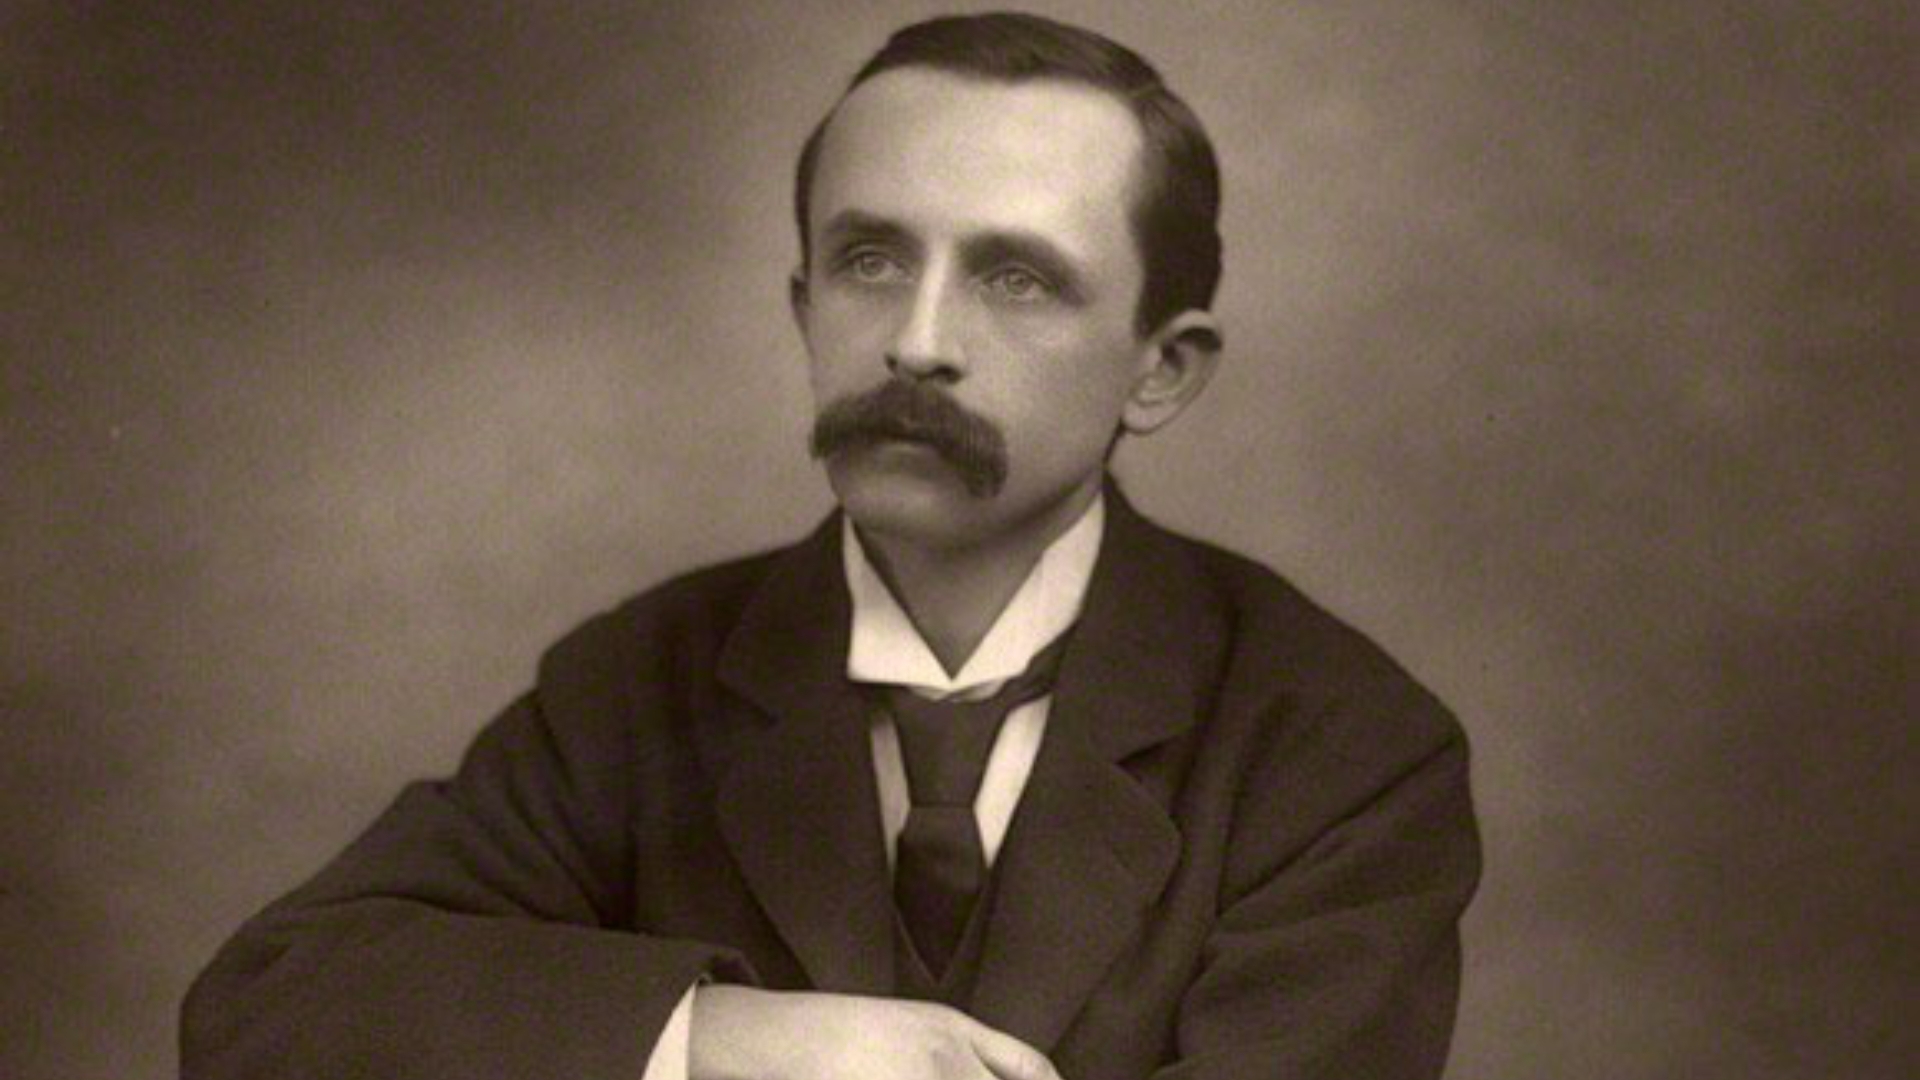 James Matthew Barrie (1860-1937), author of 